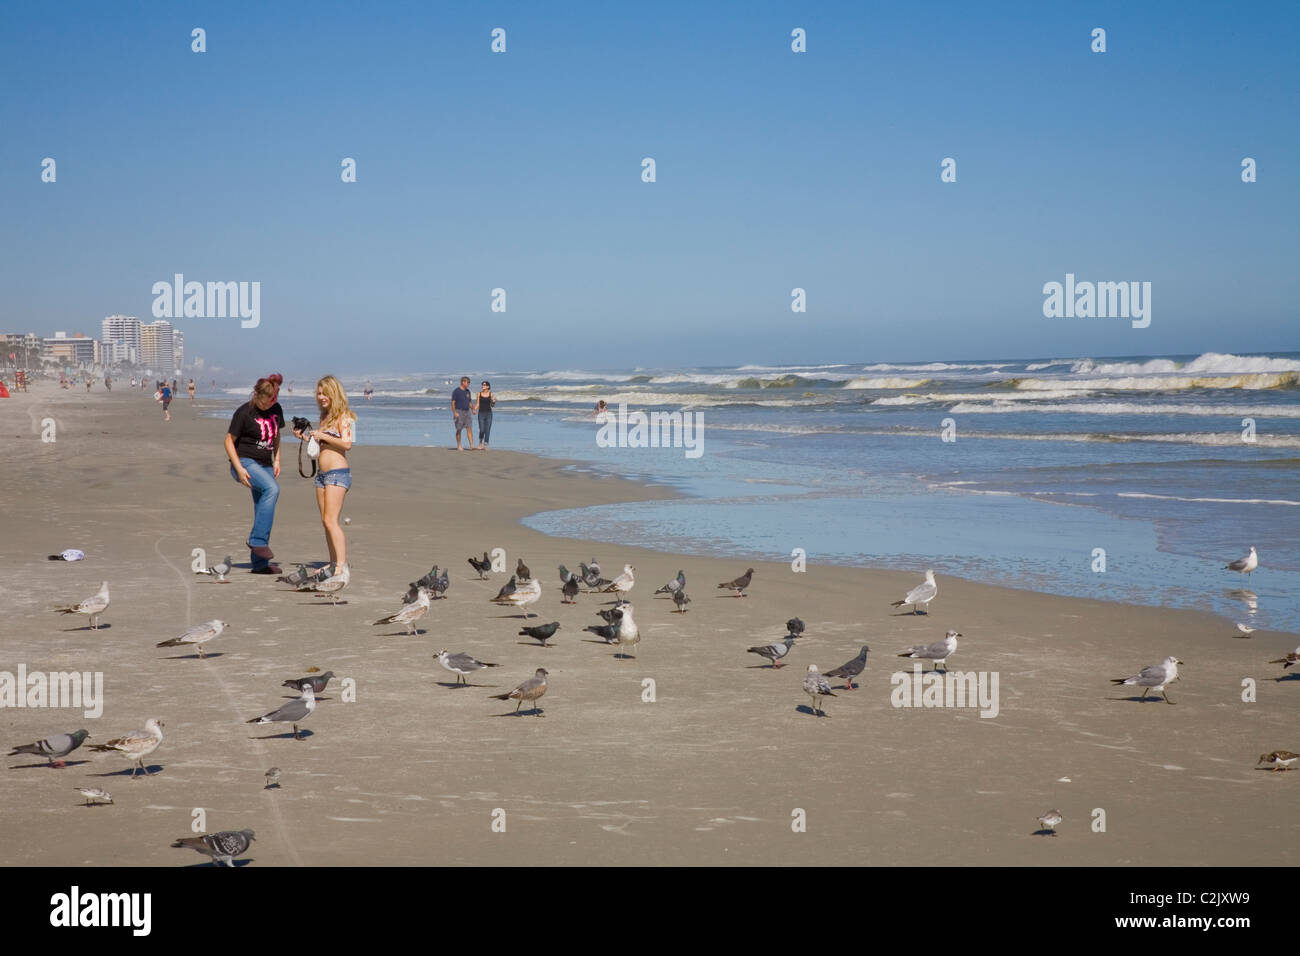 Nourrir les oiseaux, Daytona Beach, FL Banque D'Images